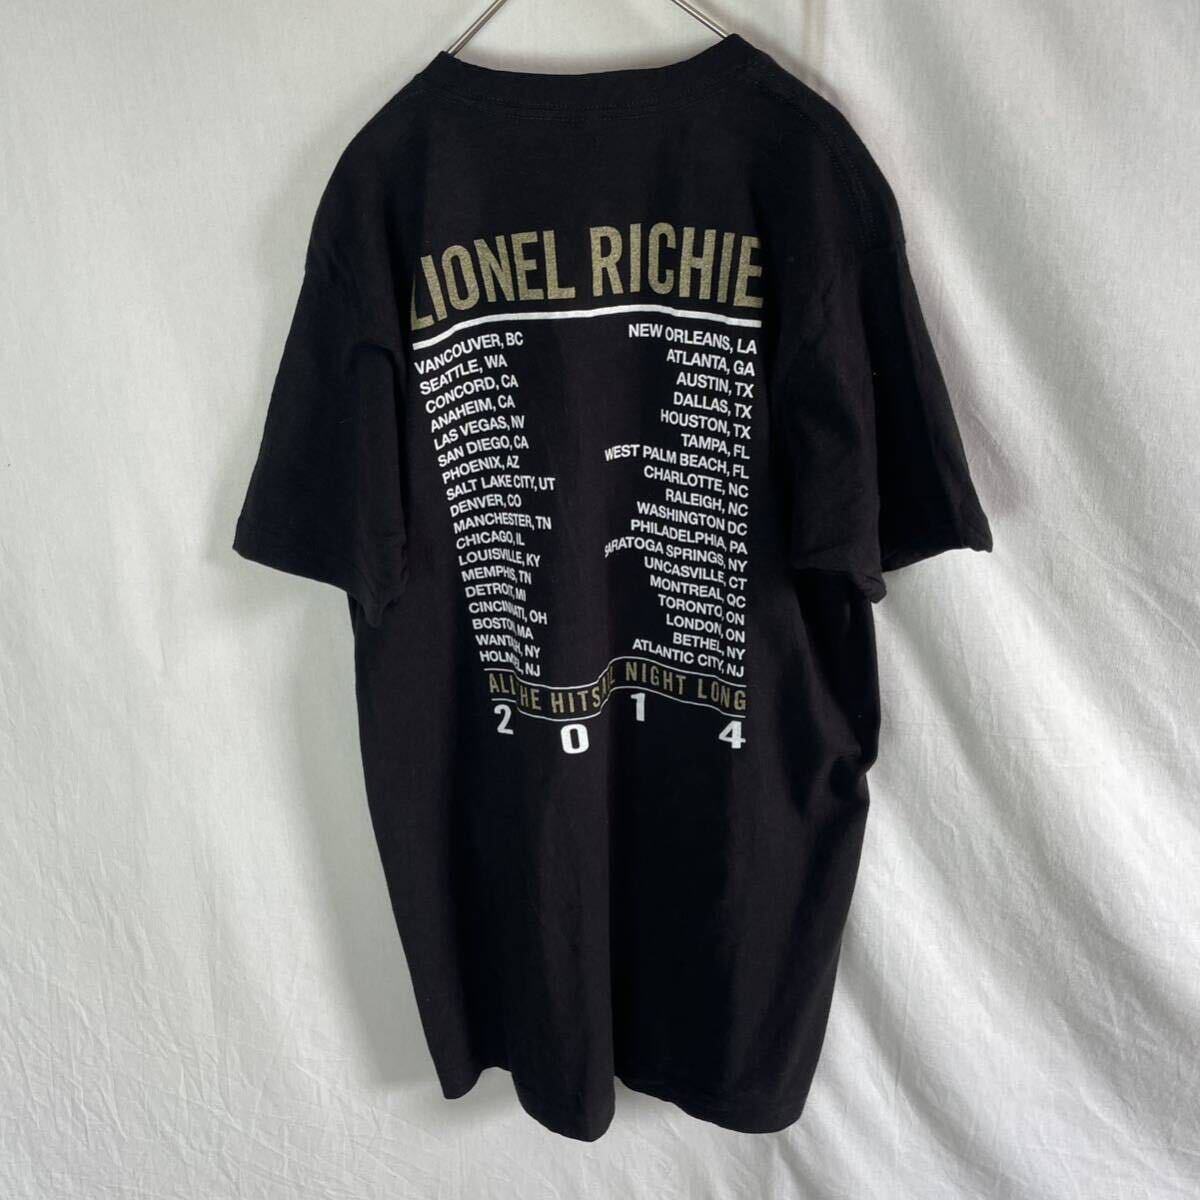 ライオネル・リッチー 半袖プリントTシャツ 古着 Lサイズ ブラックの画像2